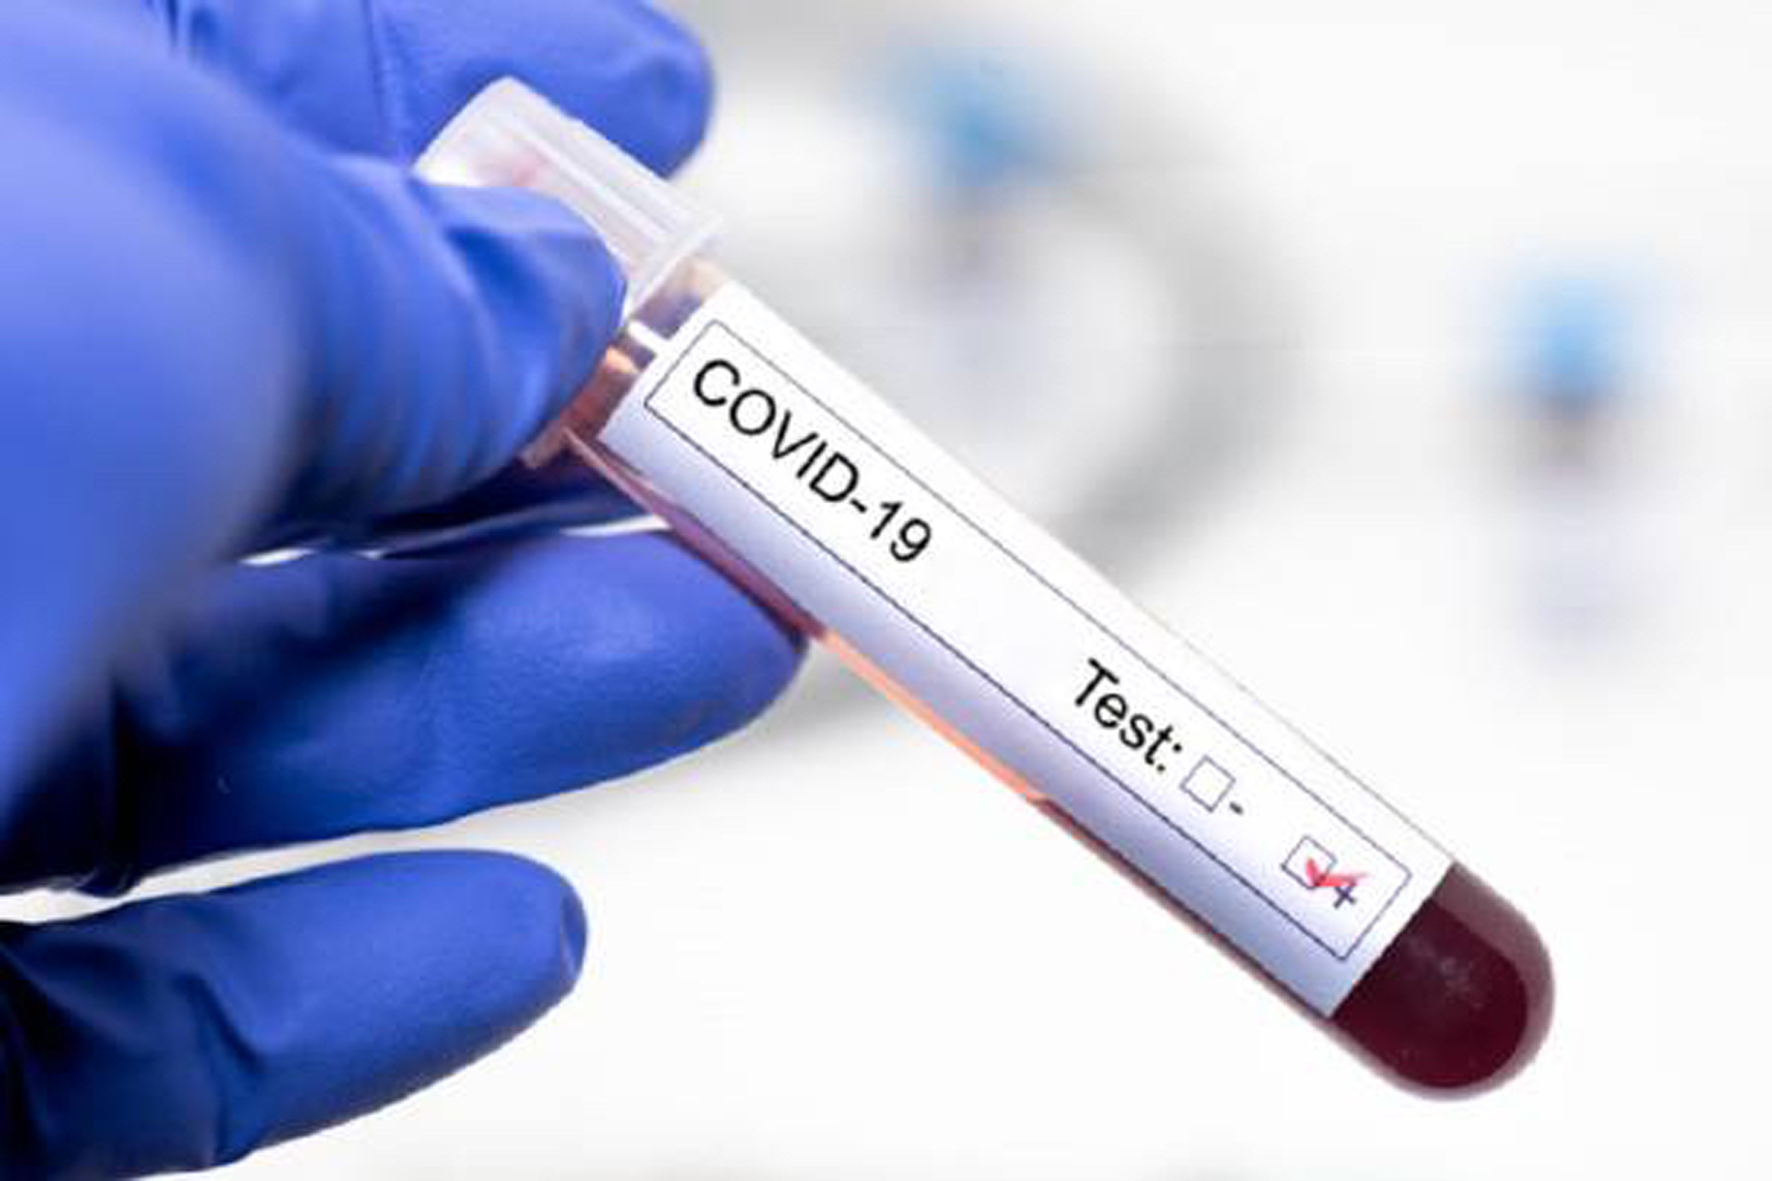 El Hierro registra tres nuevos casos de COVID-19 y eleva a 14 sus casos activos